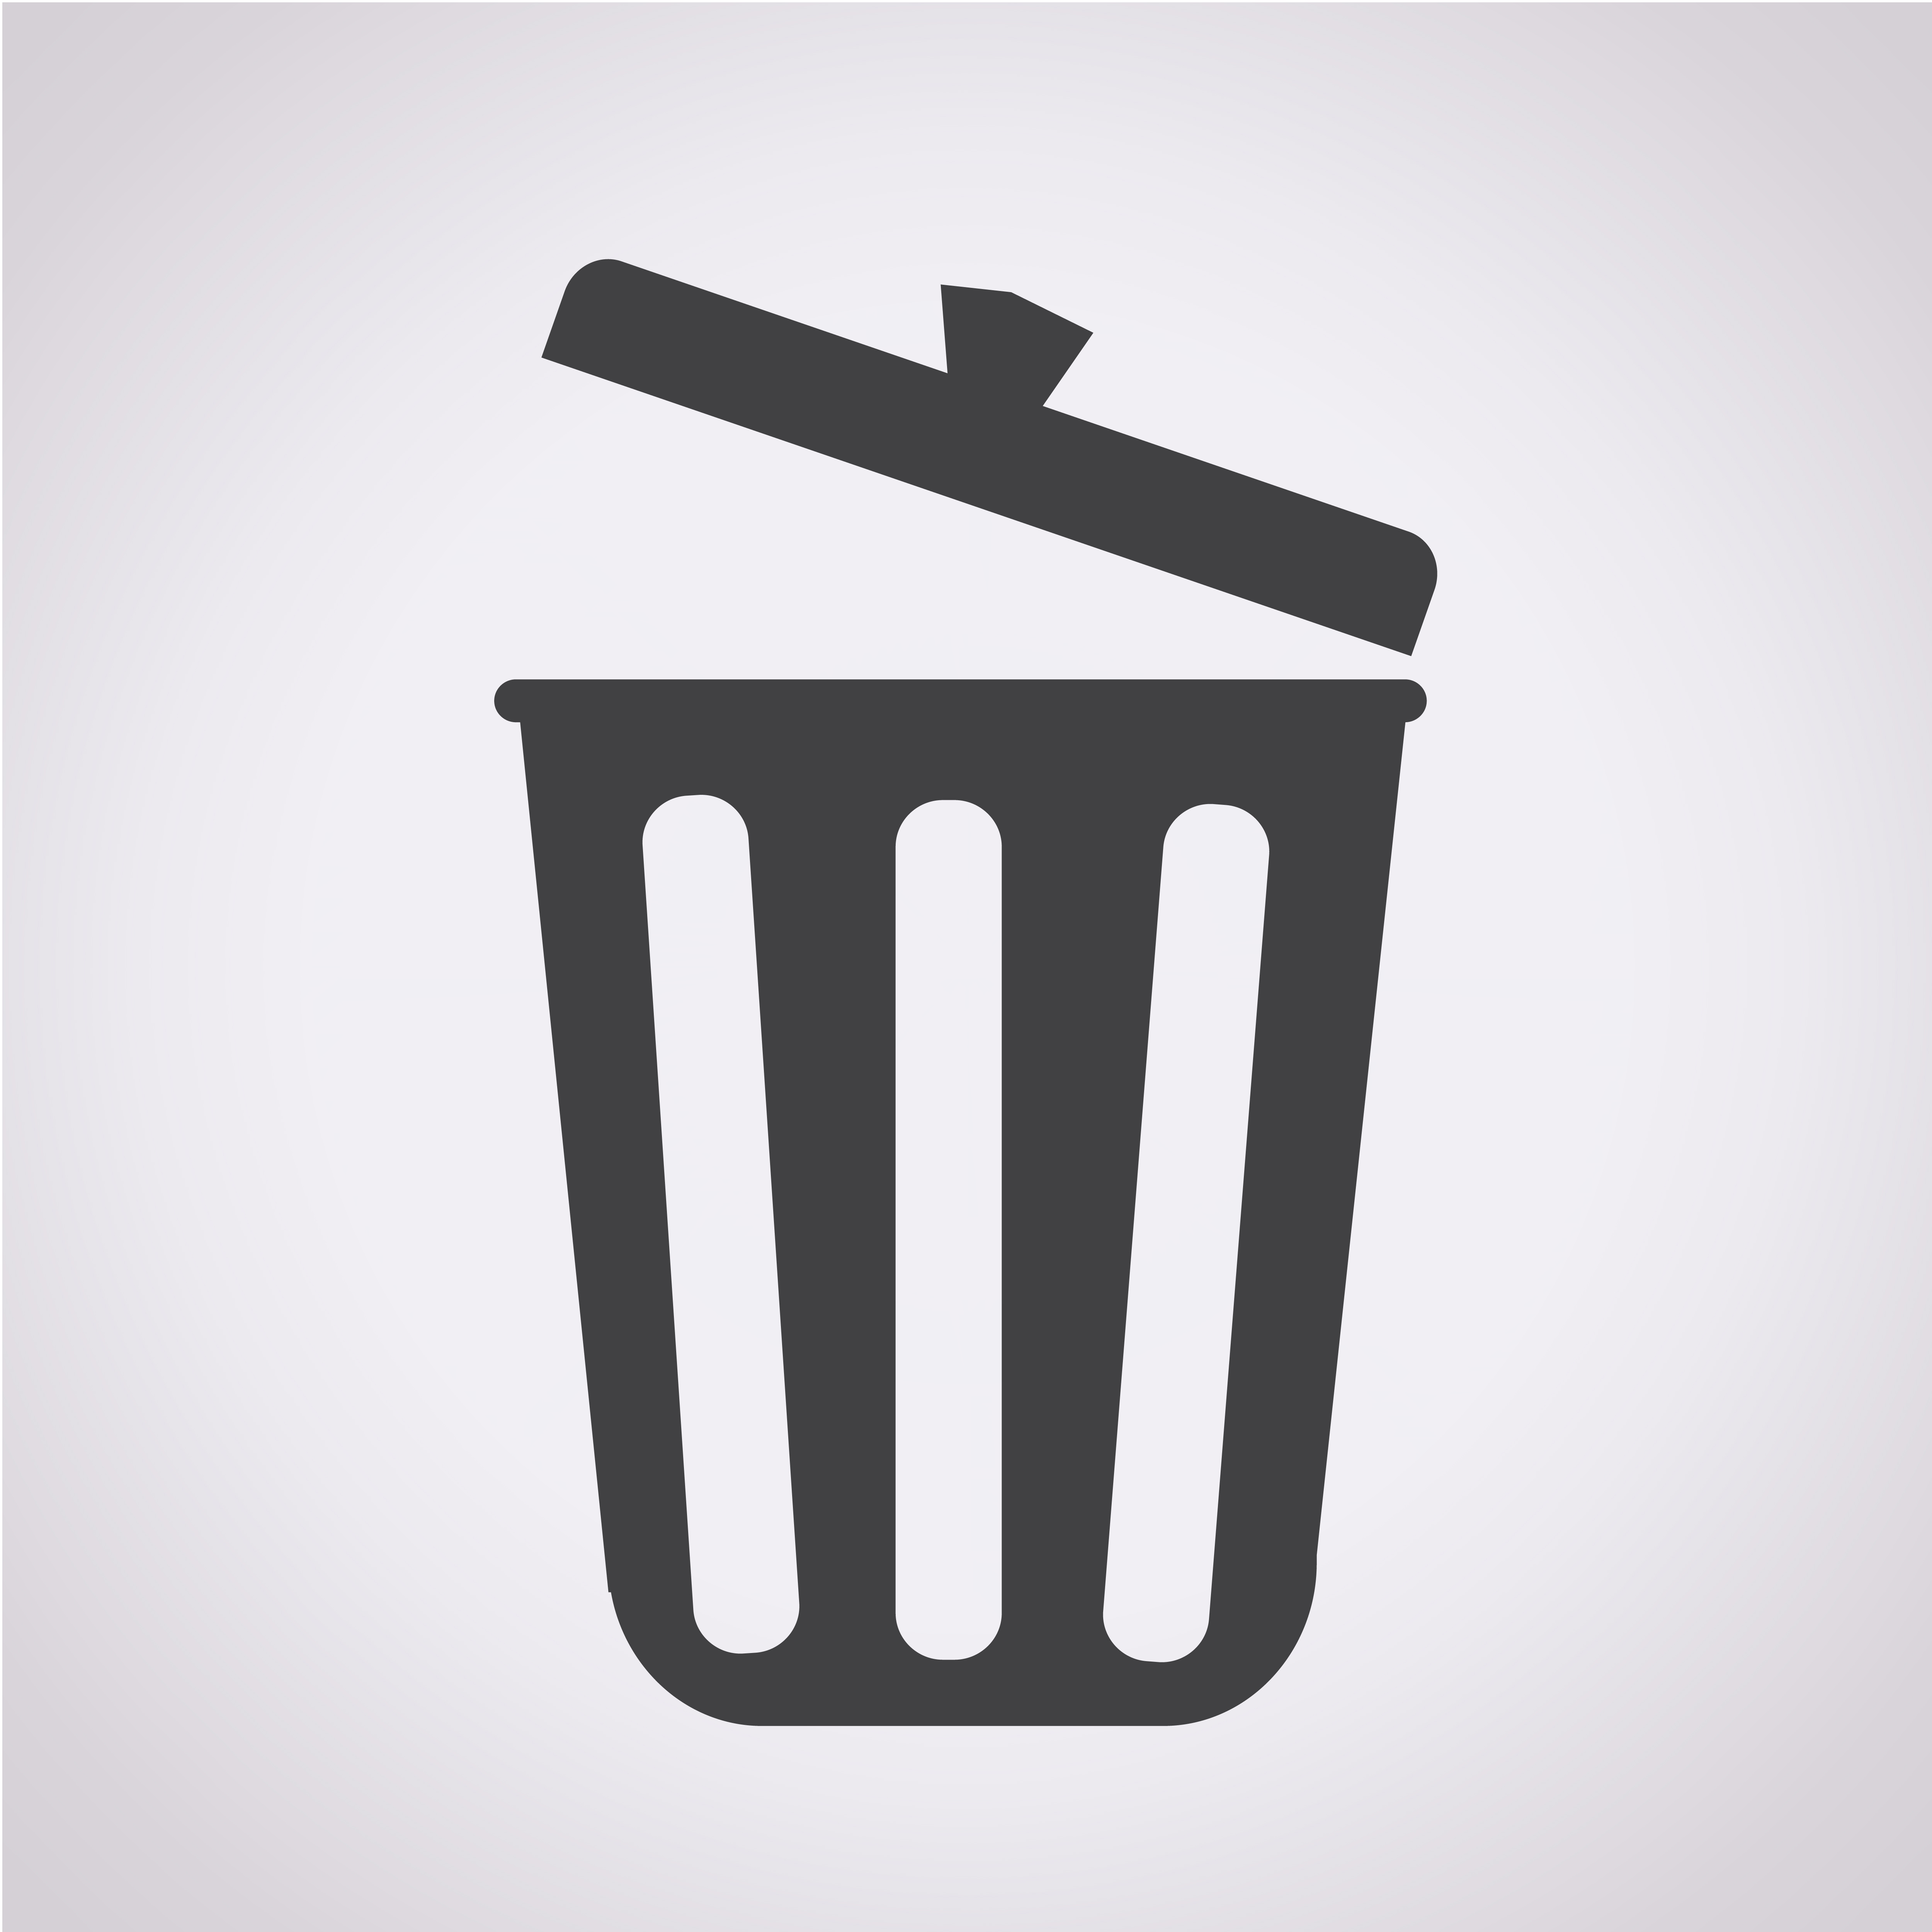 Download trash icon symbol sign 649283 - Download Free Vectors ...